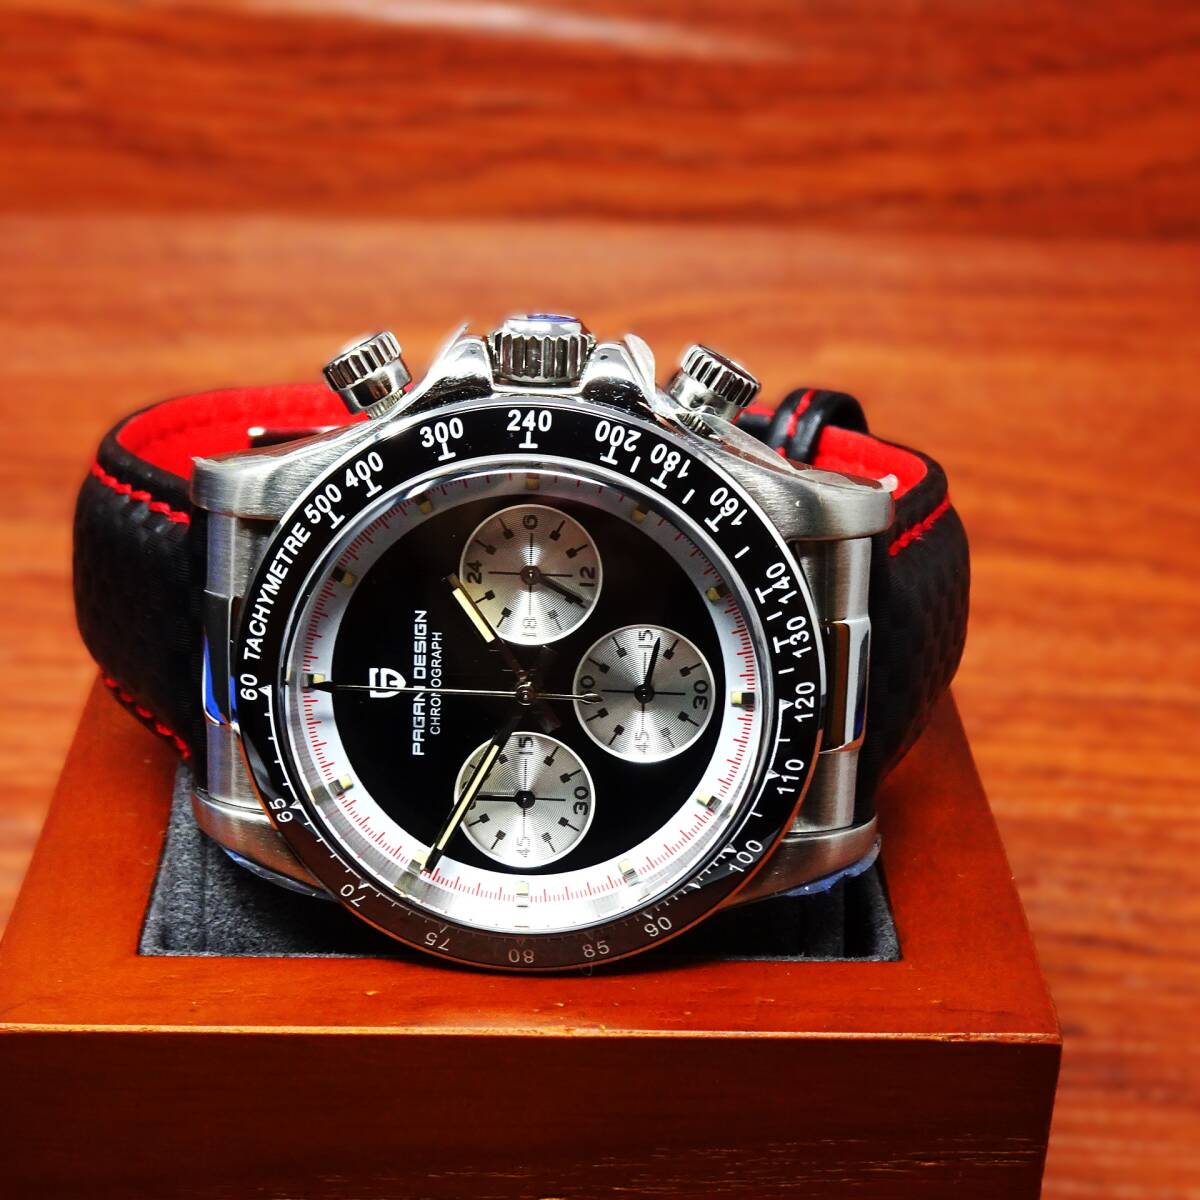 送料無料・新品・パガーニデザイン・メンズ・セイコー製VK63クロノグラフクオーツ式腕時計・オマージュ・カーボン柄本革モデル・PD-1676・Bの画像4